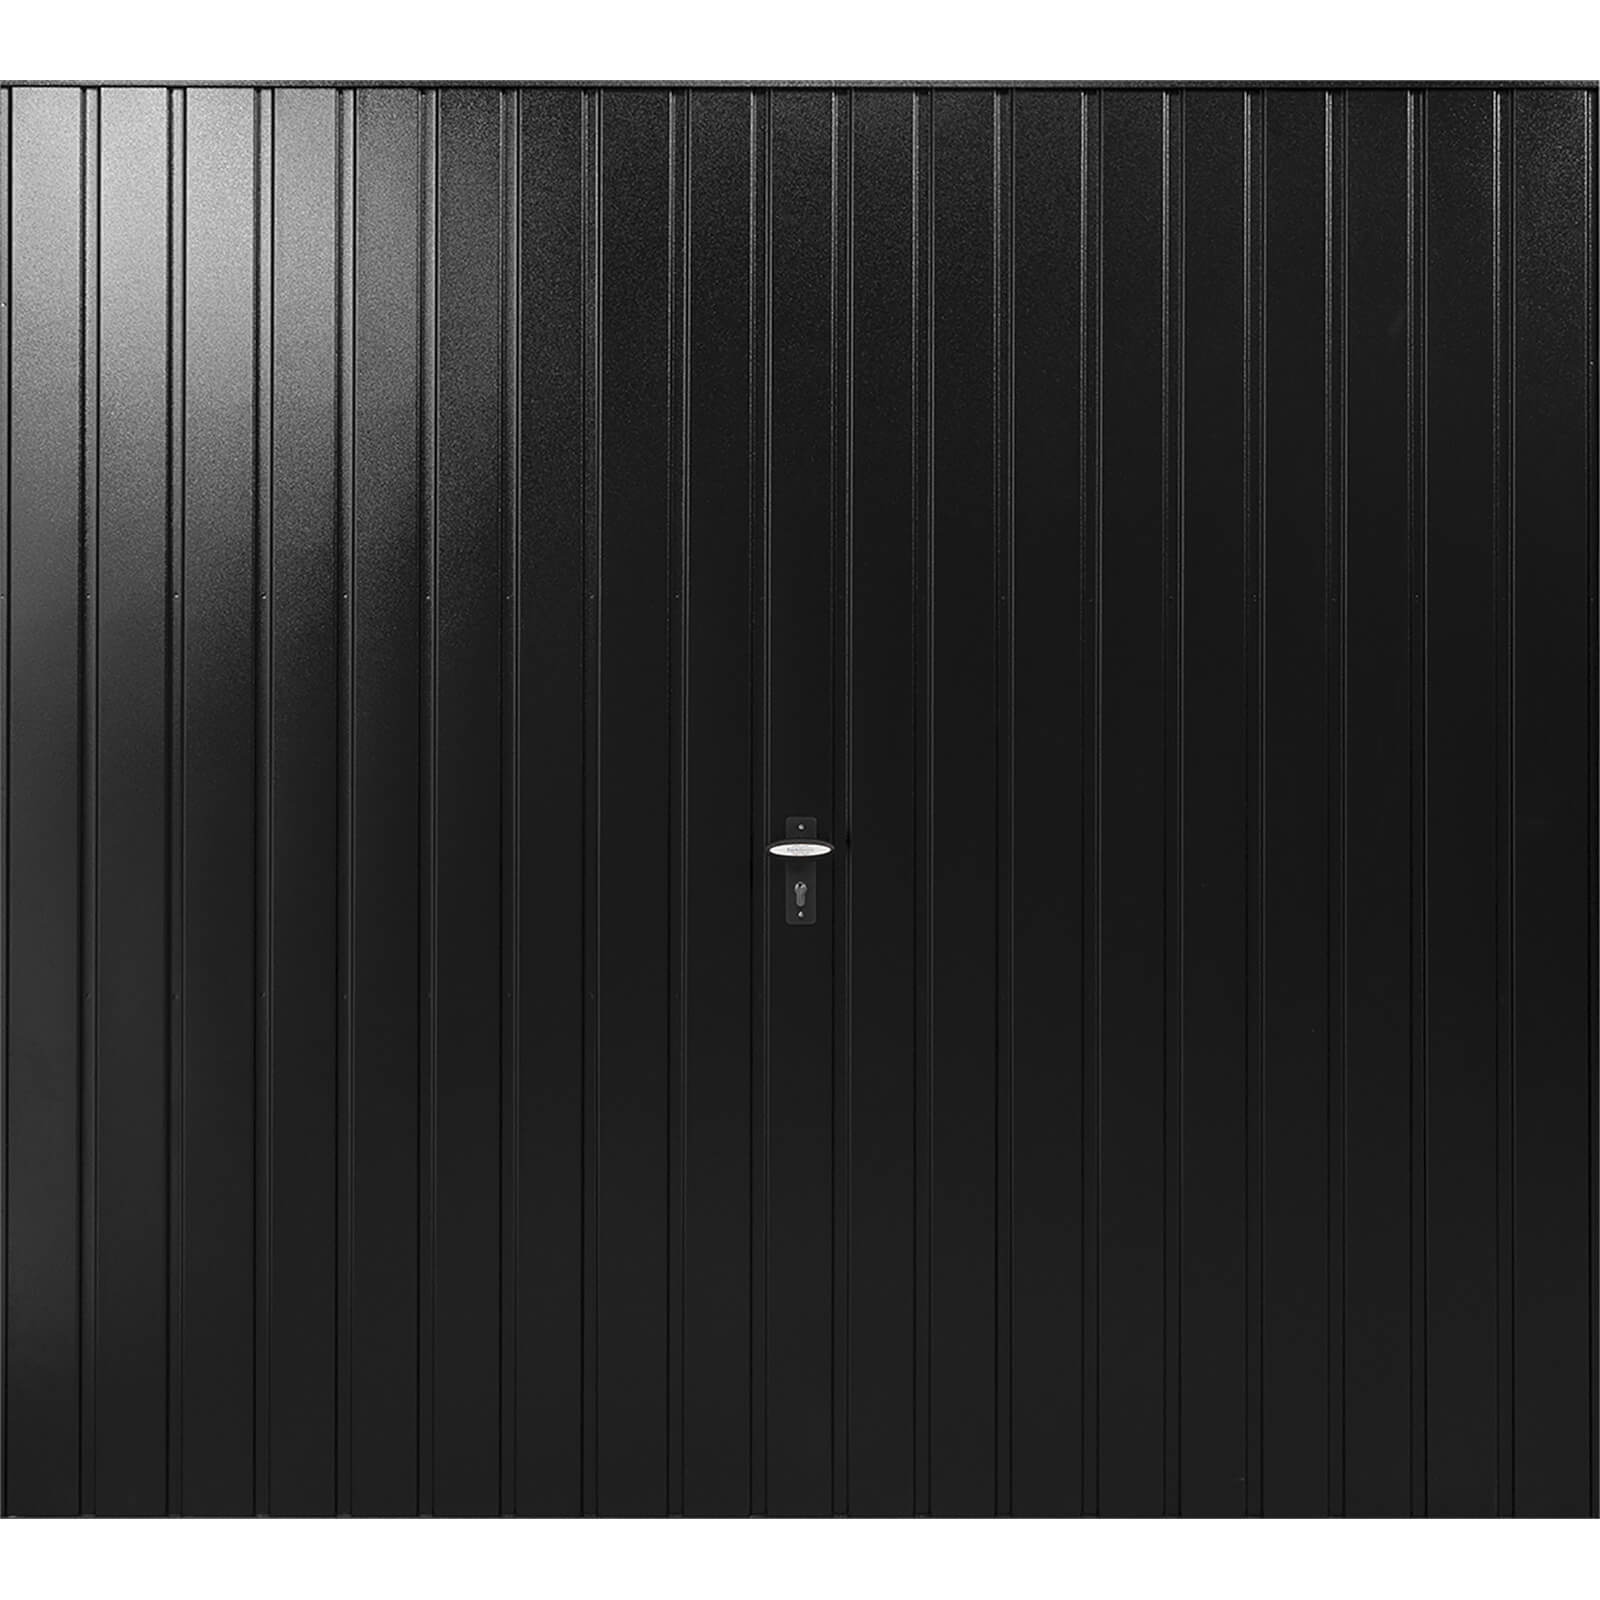 Vertical 7' 6 x 6' 6 Framed Steel Garage Door Black